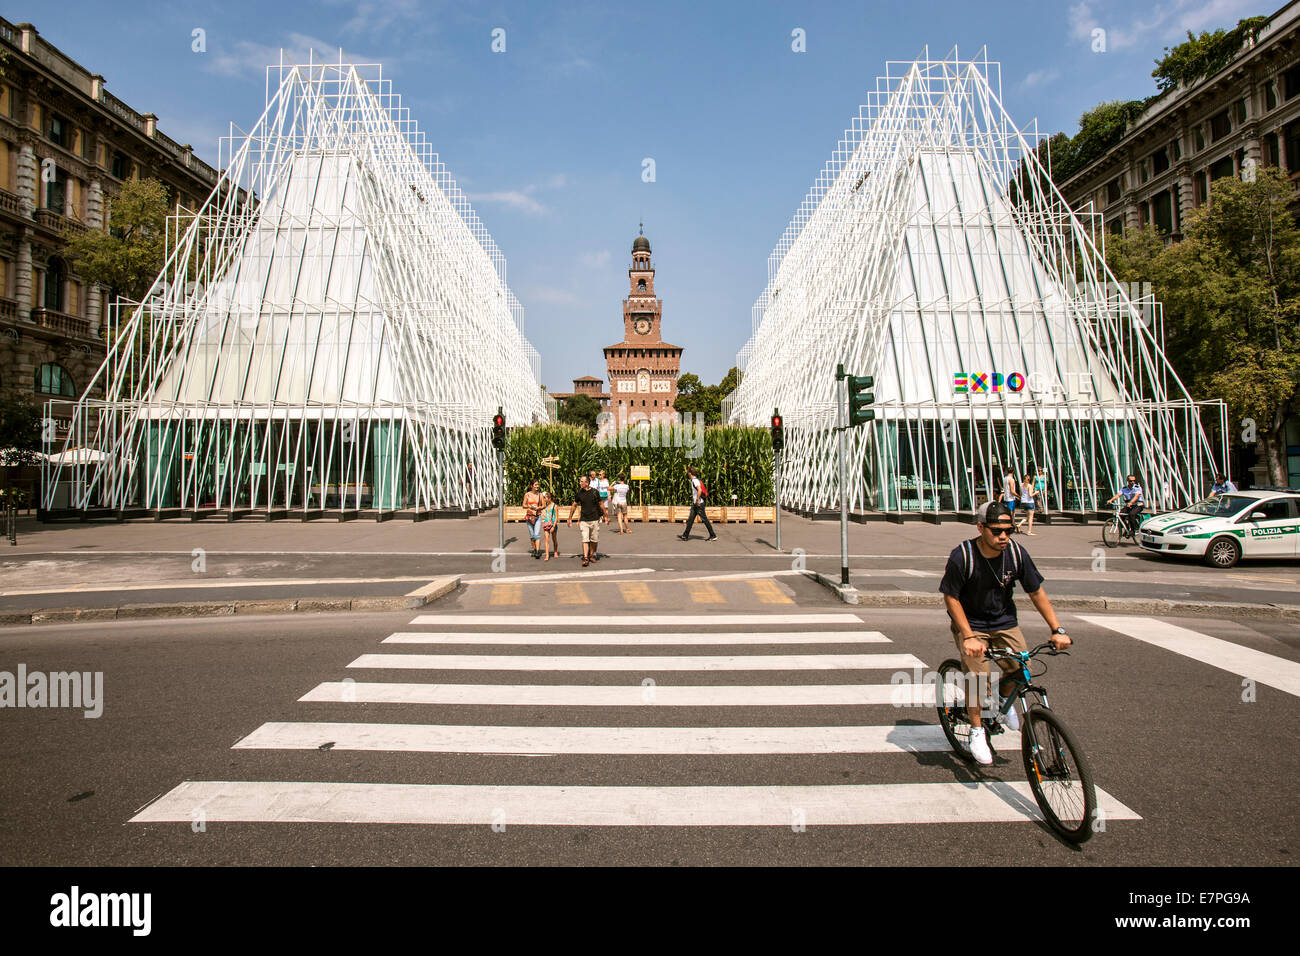 Milan, Expo 2015, EXPOGATE, Fair Universal, Exposition, Sforzesco castle, city,  gate, infopoint, pedestrian crossing, cyclist Stock Photo